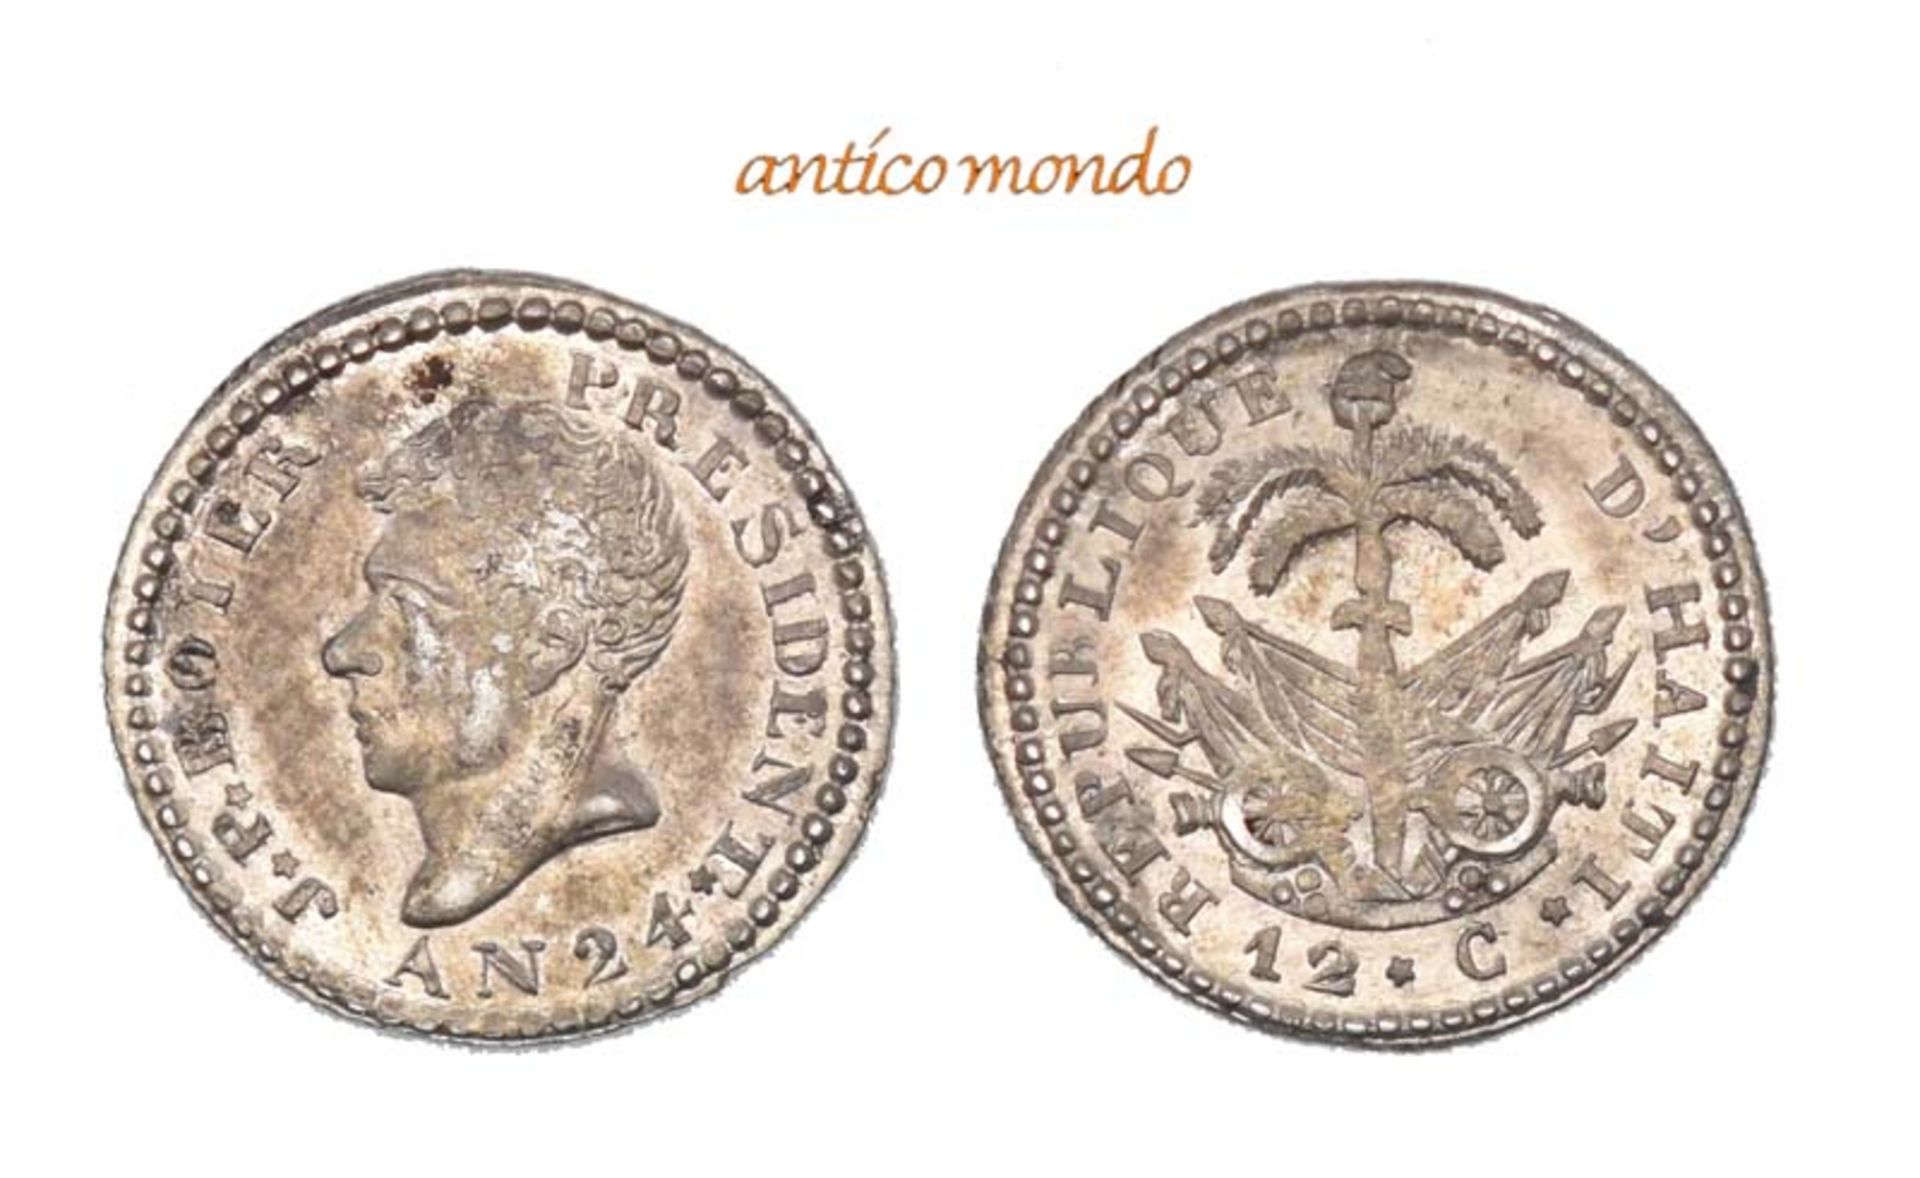 Haiti, Republik, 12 Centimes, An 24 (1827), vorzüglich-Stempelglanz, 1,41 g- - -21.50 % buyer's